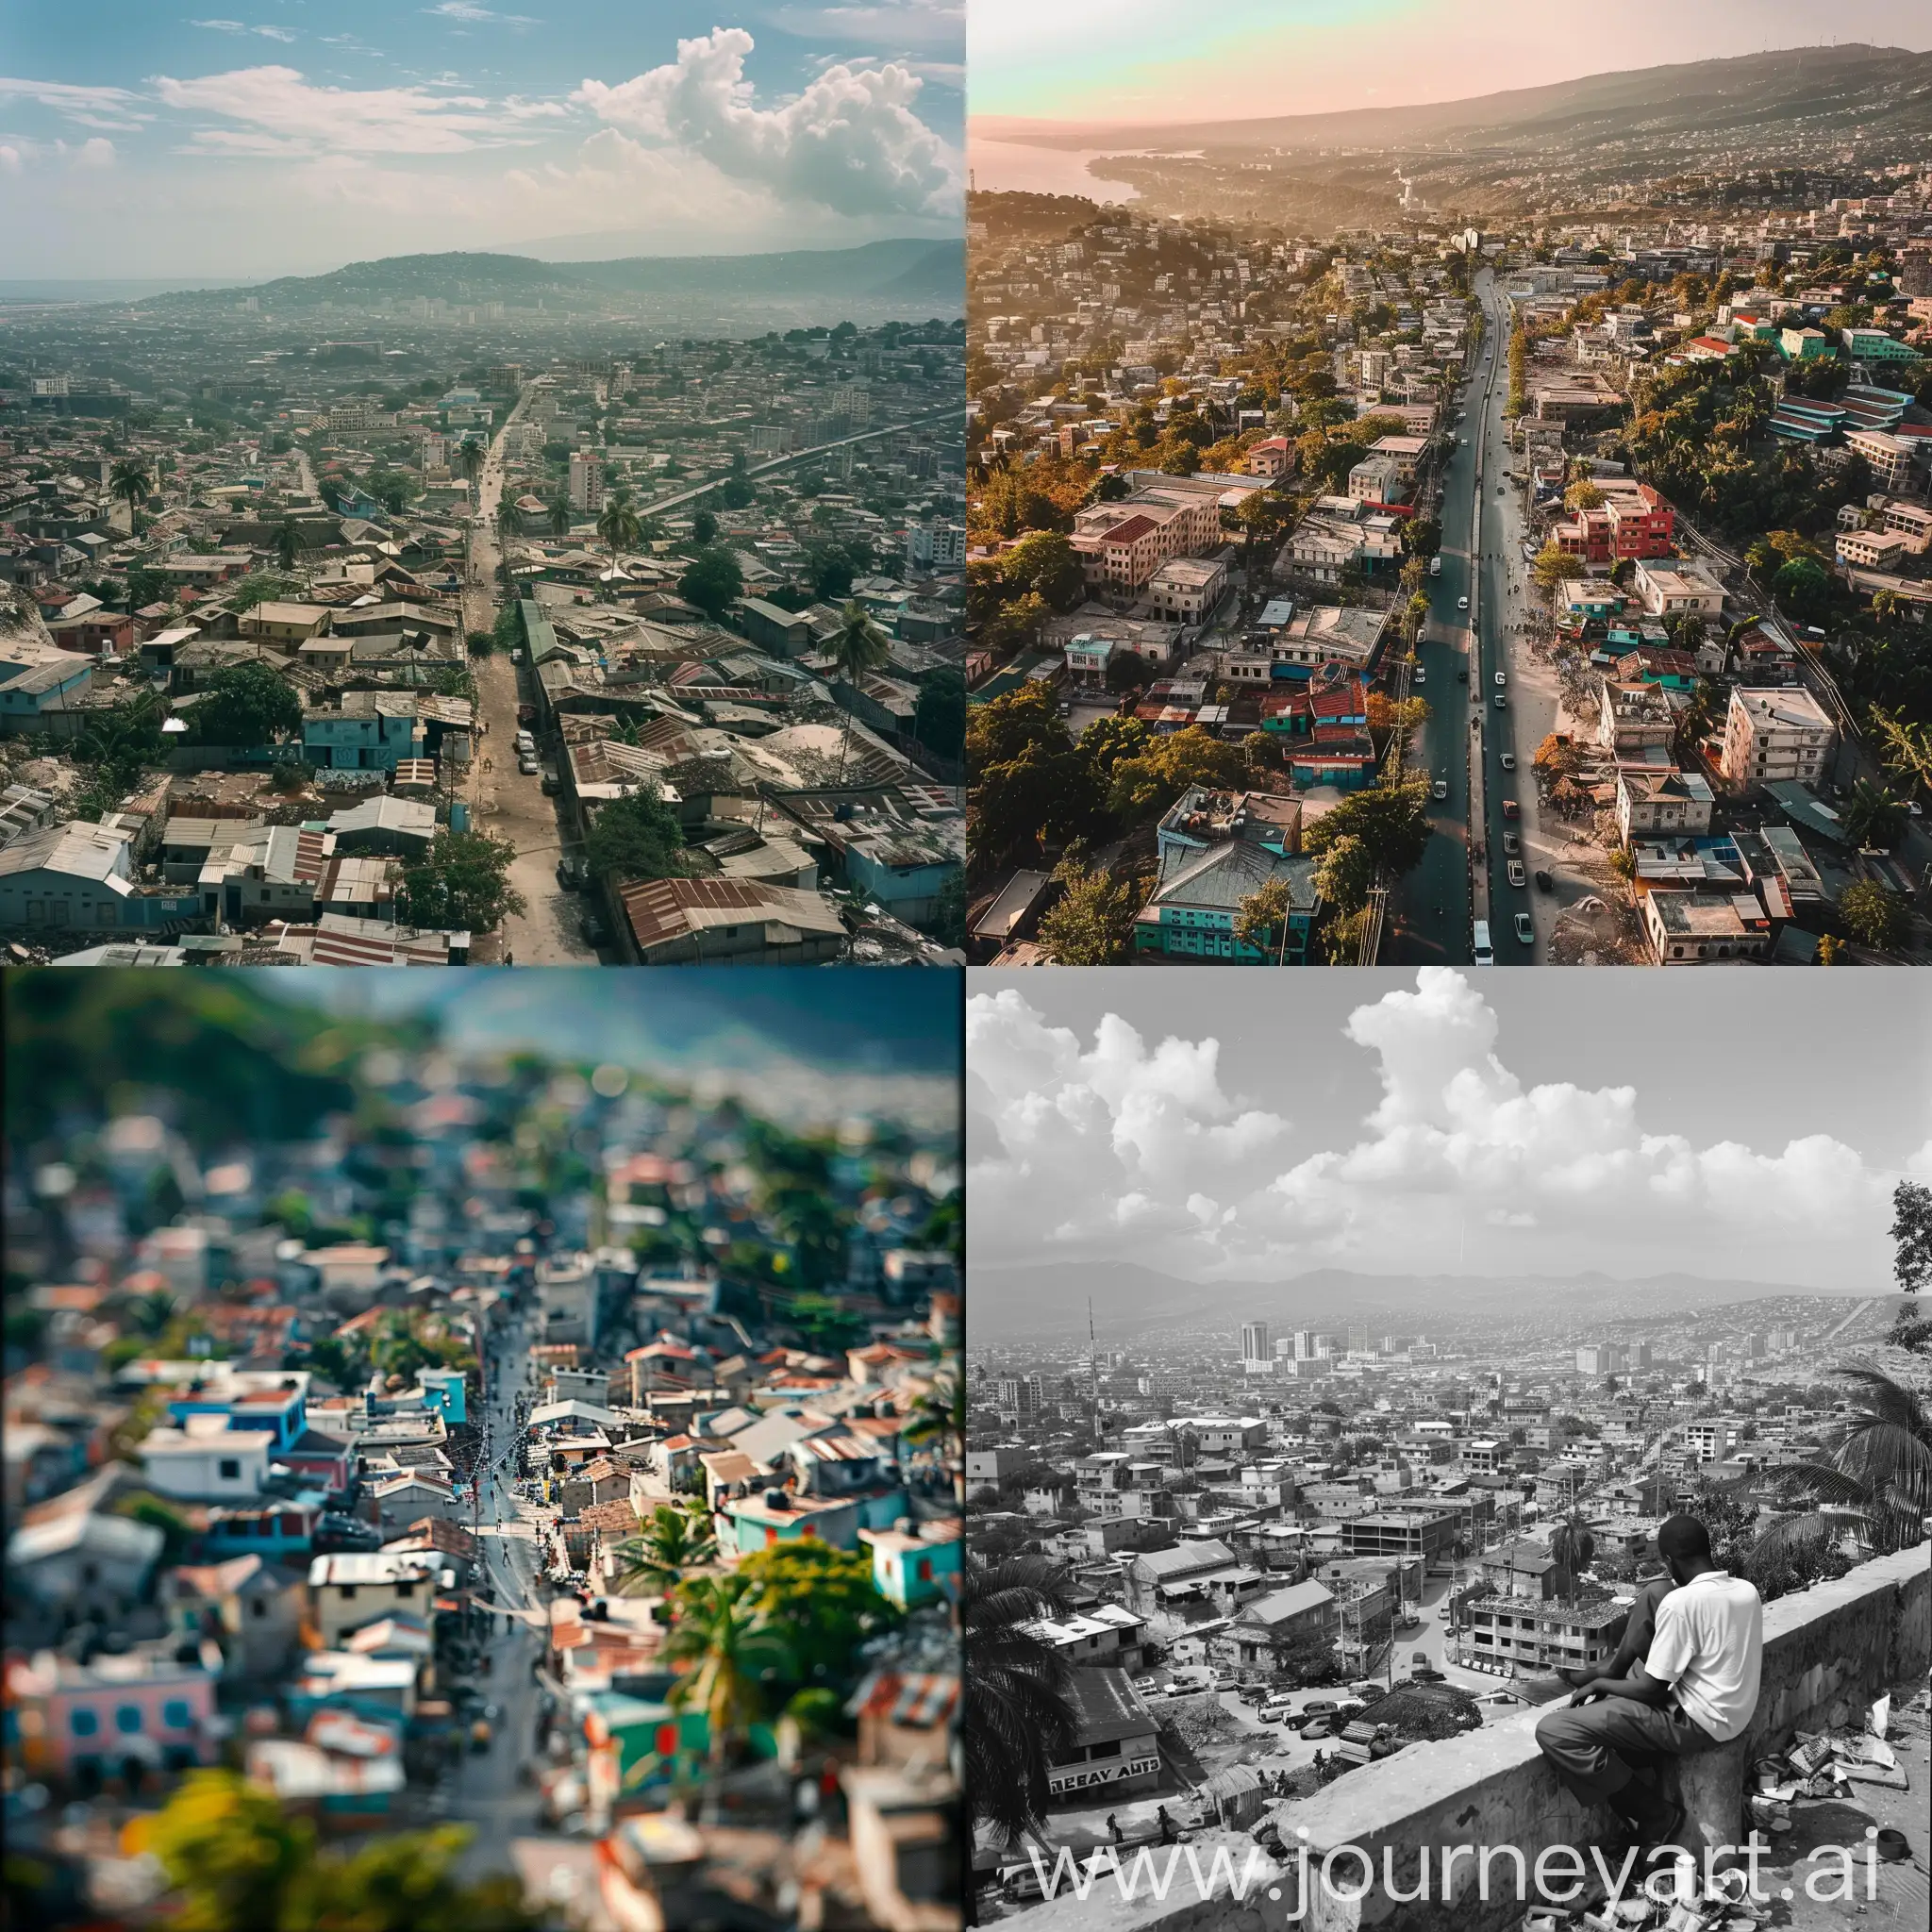 Modern-Urban-Landscape-in-First-World-Haiti